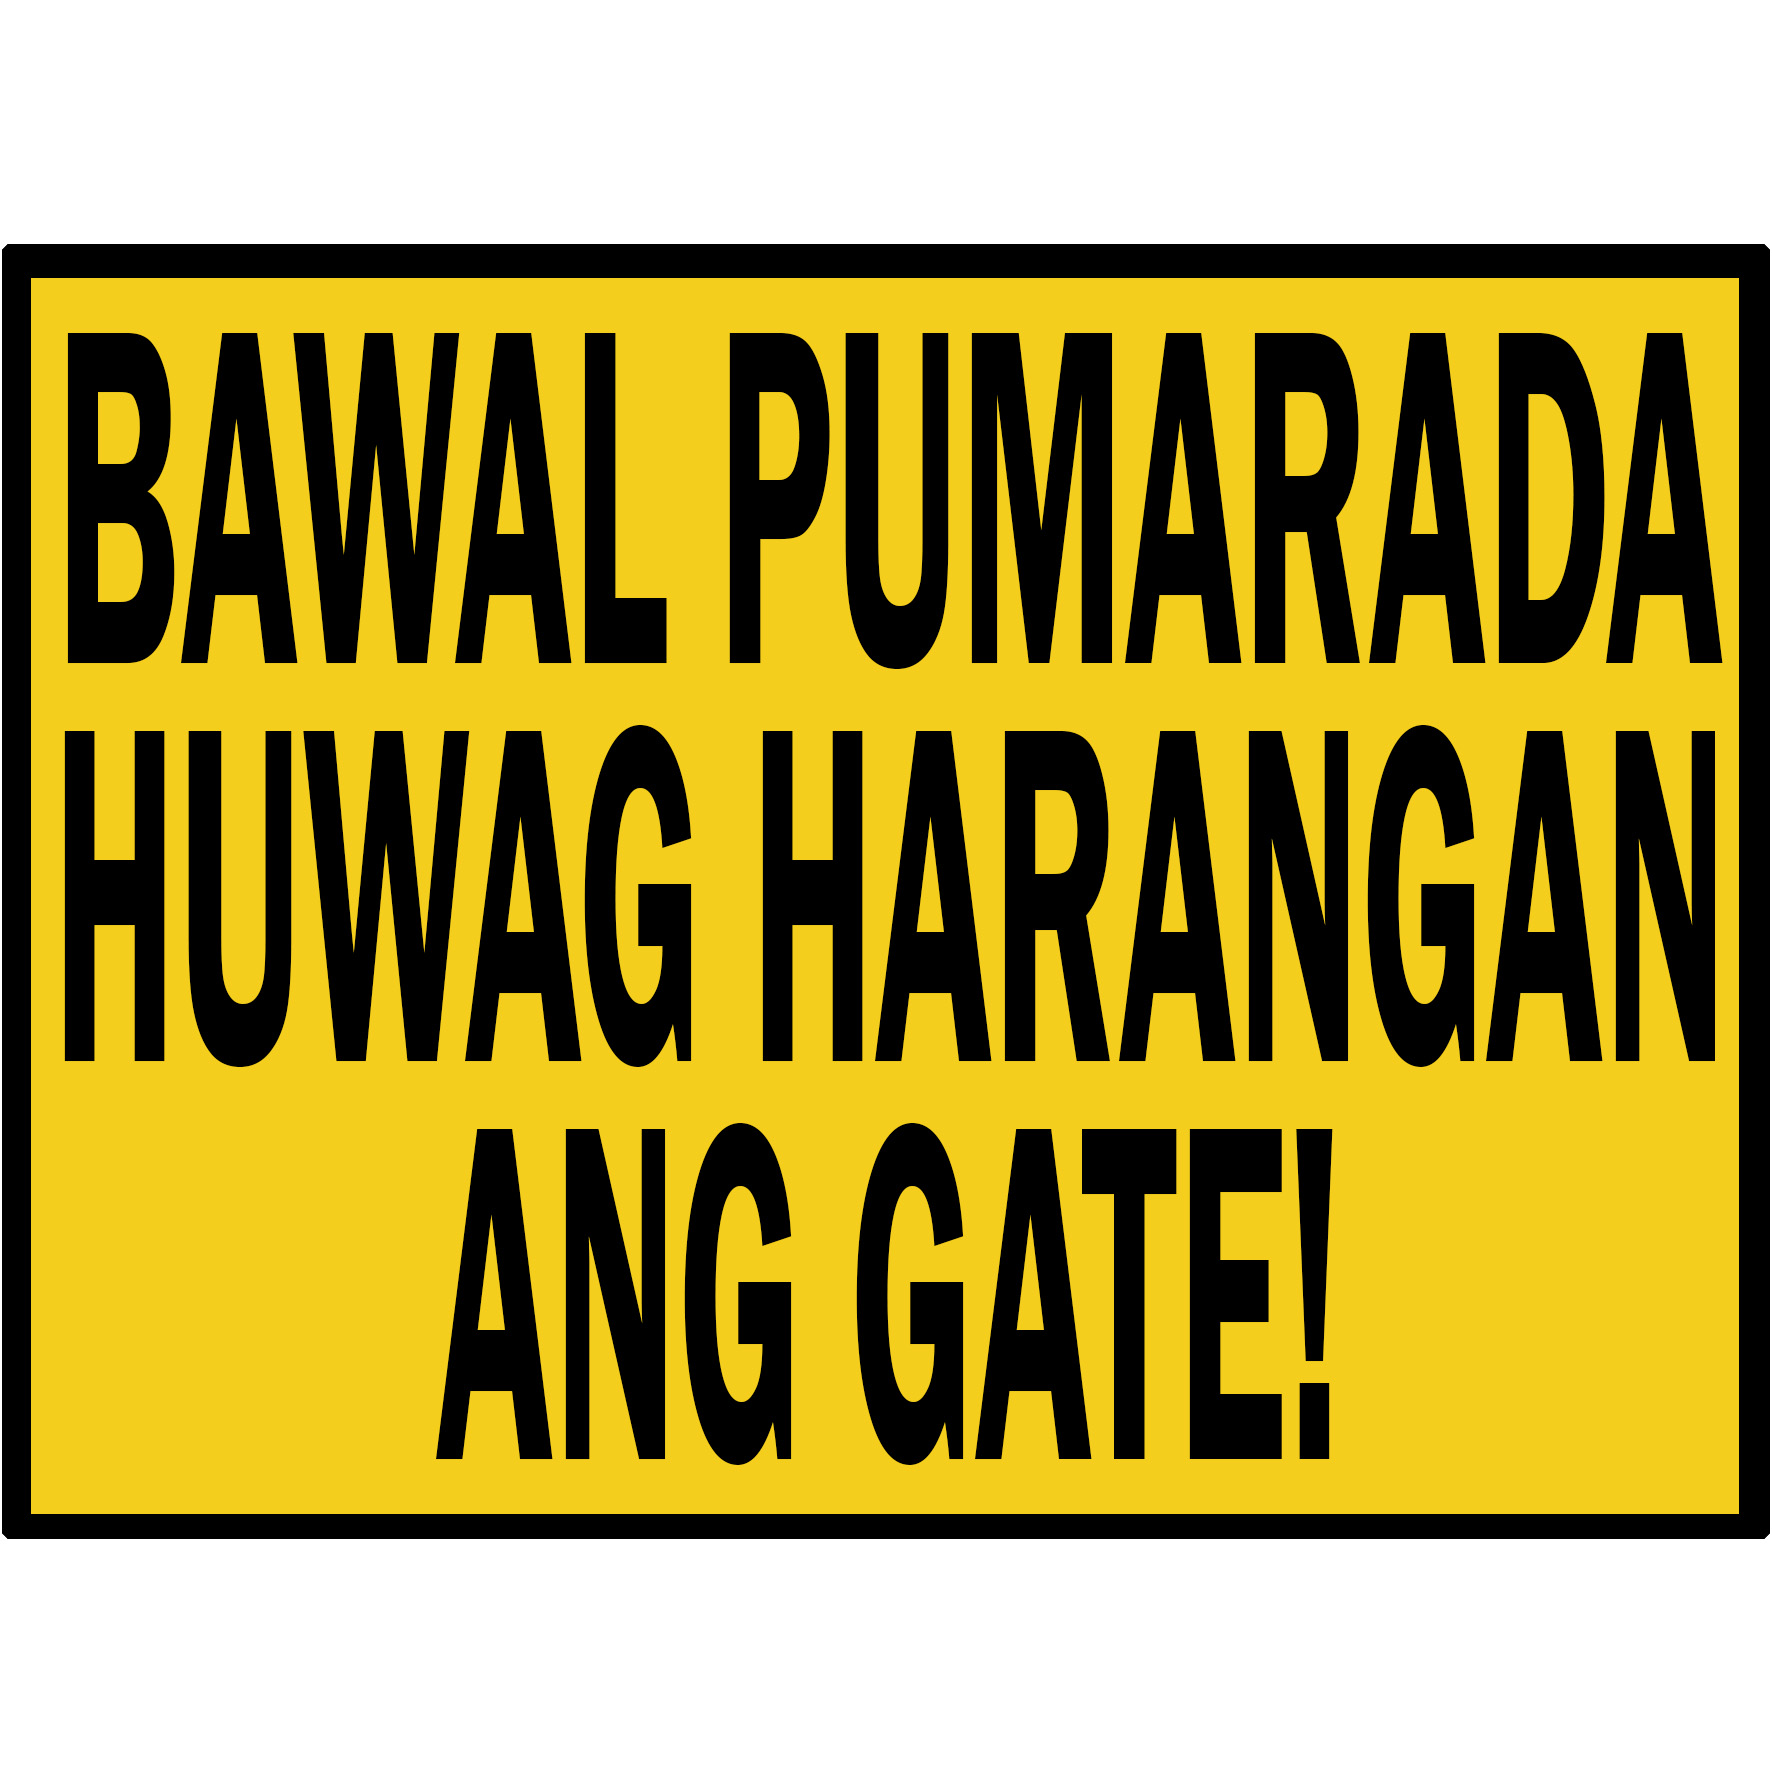 Huwag Harangan Ang Gate Sign Laminated Signage Sign B 5069